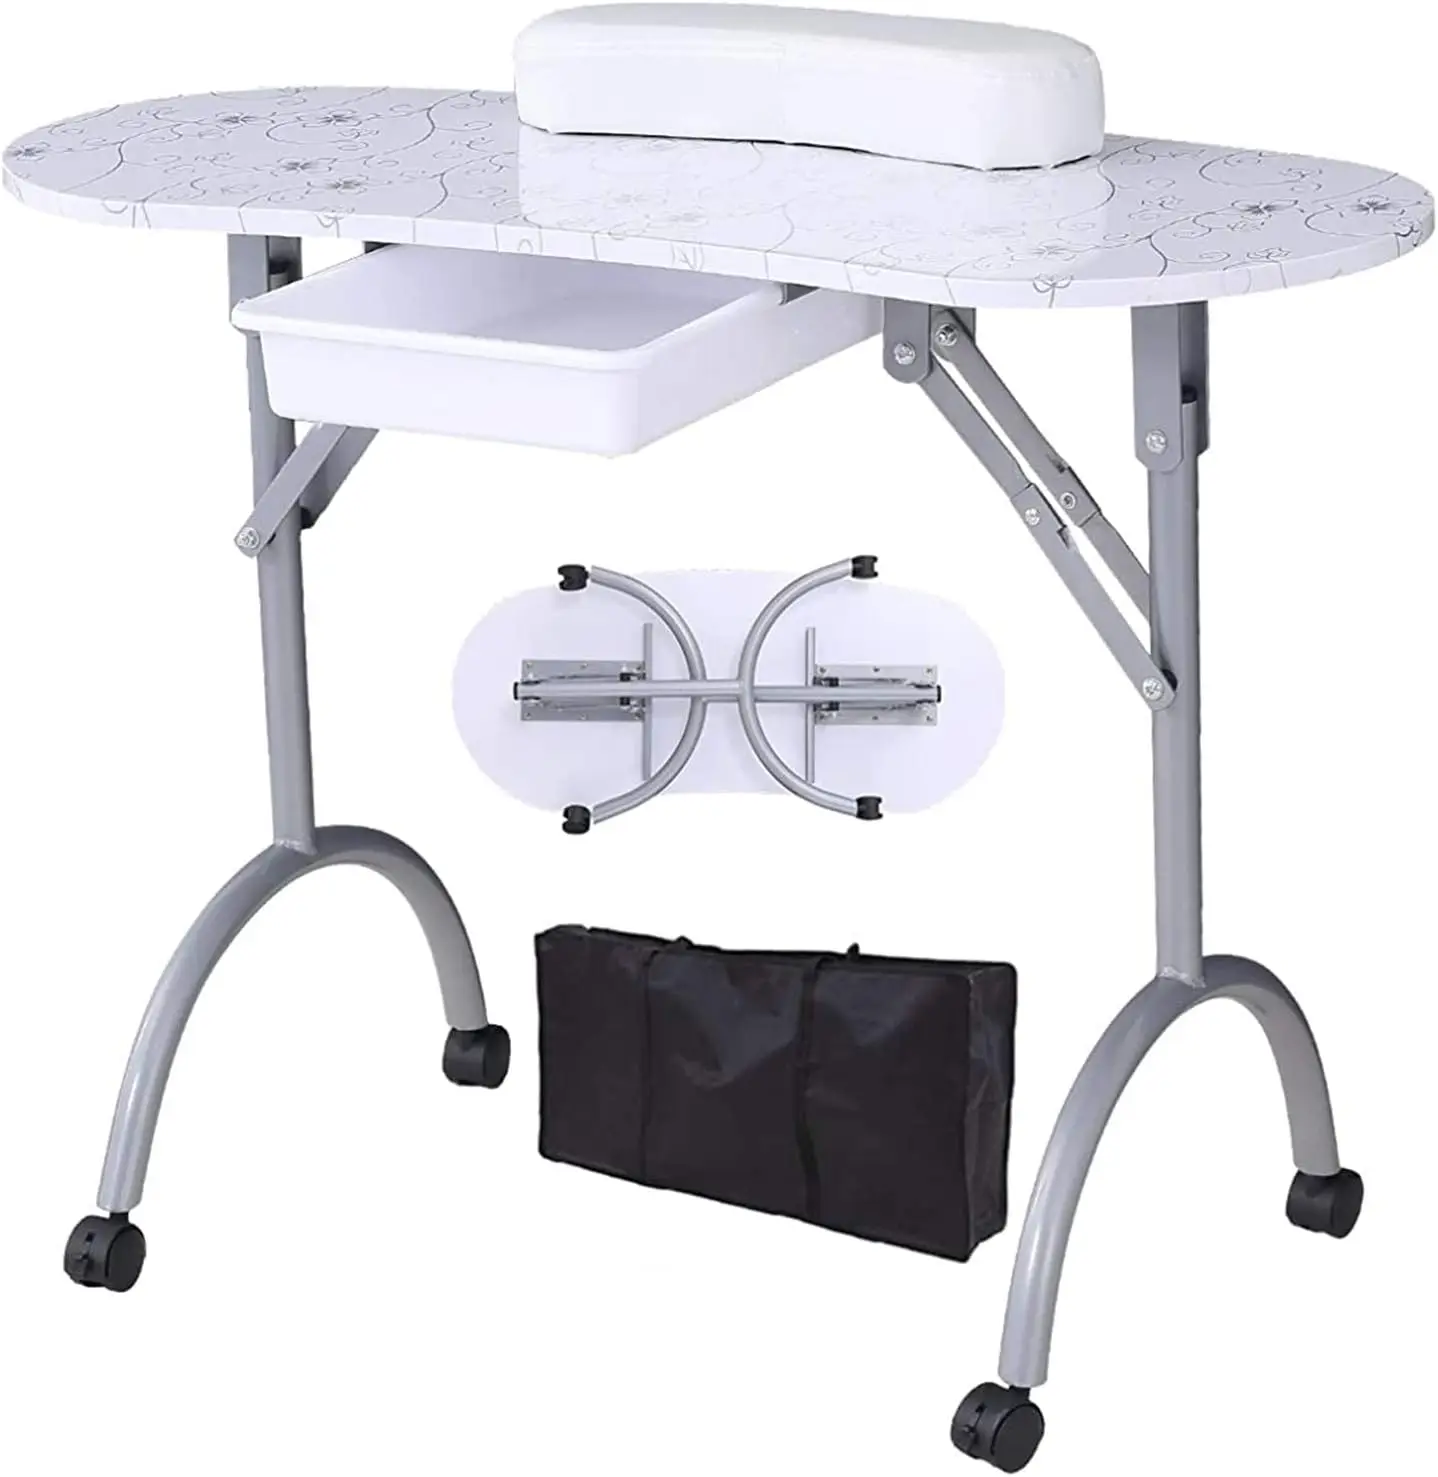 

Alohappy столик для маникюра, портативная и Складная Рабочая станция для рабочего стола с большим ящиком/клиентская накладка на запястье/Запираемая вращающаяся